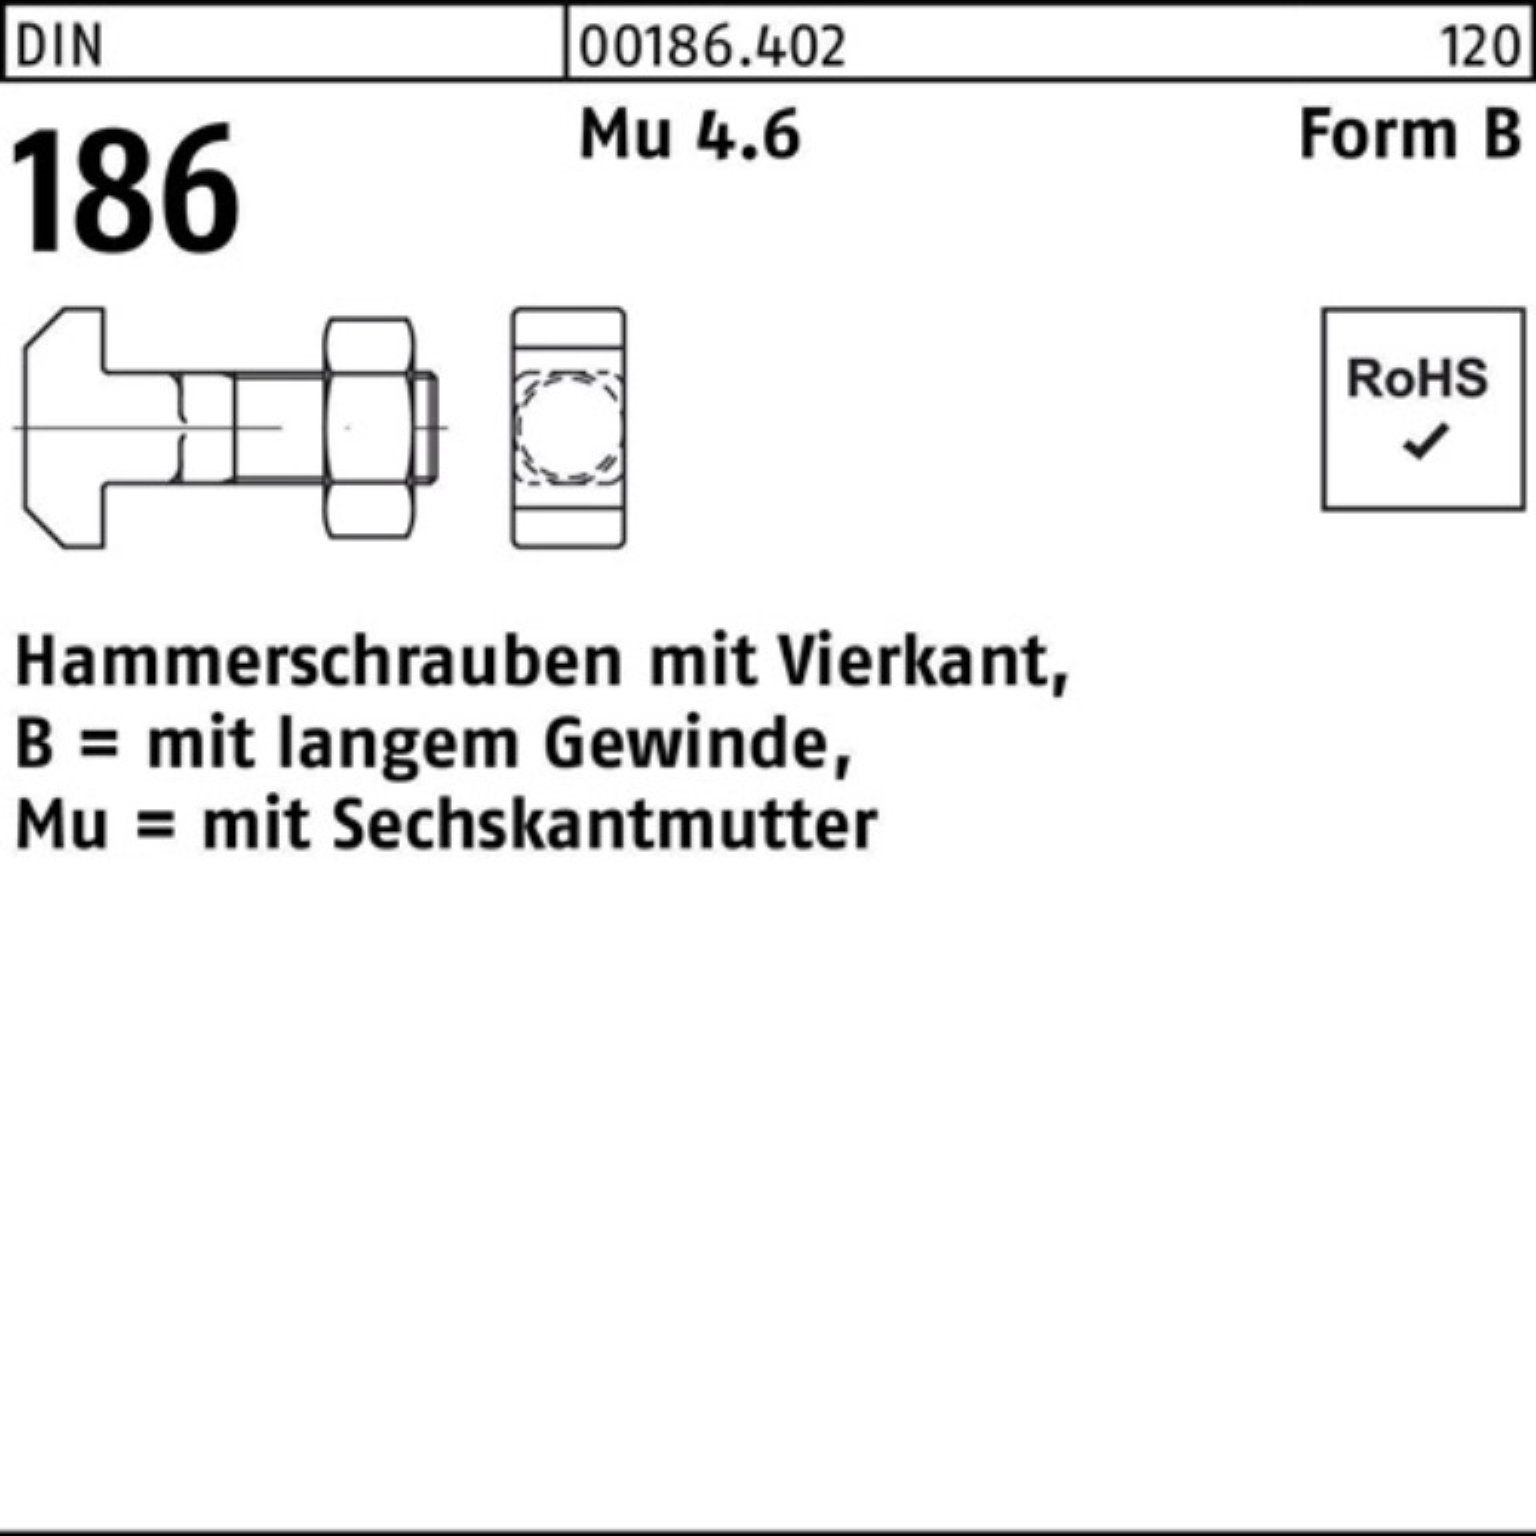 186 16x Pack BM FormB Reyher DIN 120 Vierkant 100er Hammerschraube Schraube 6-ktmutter